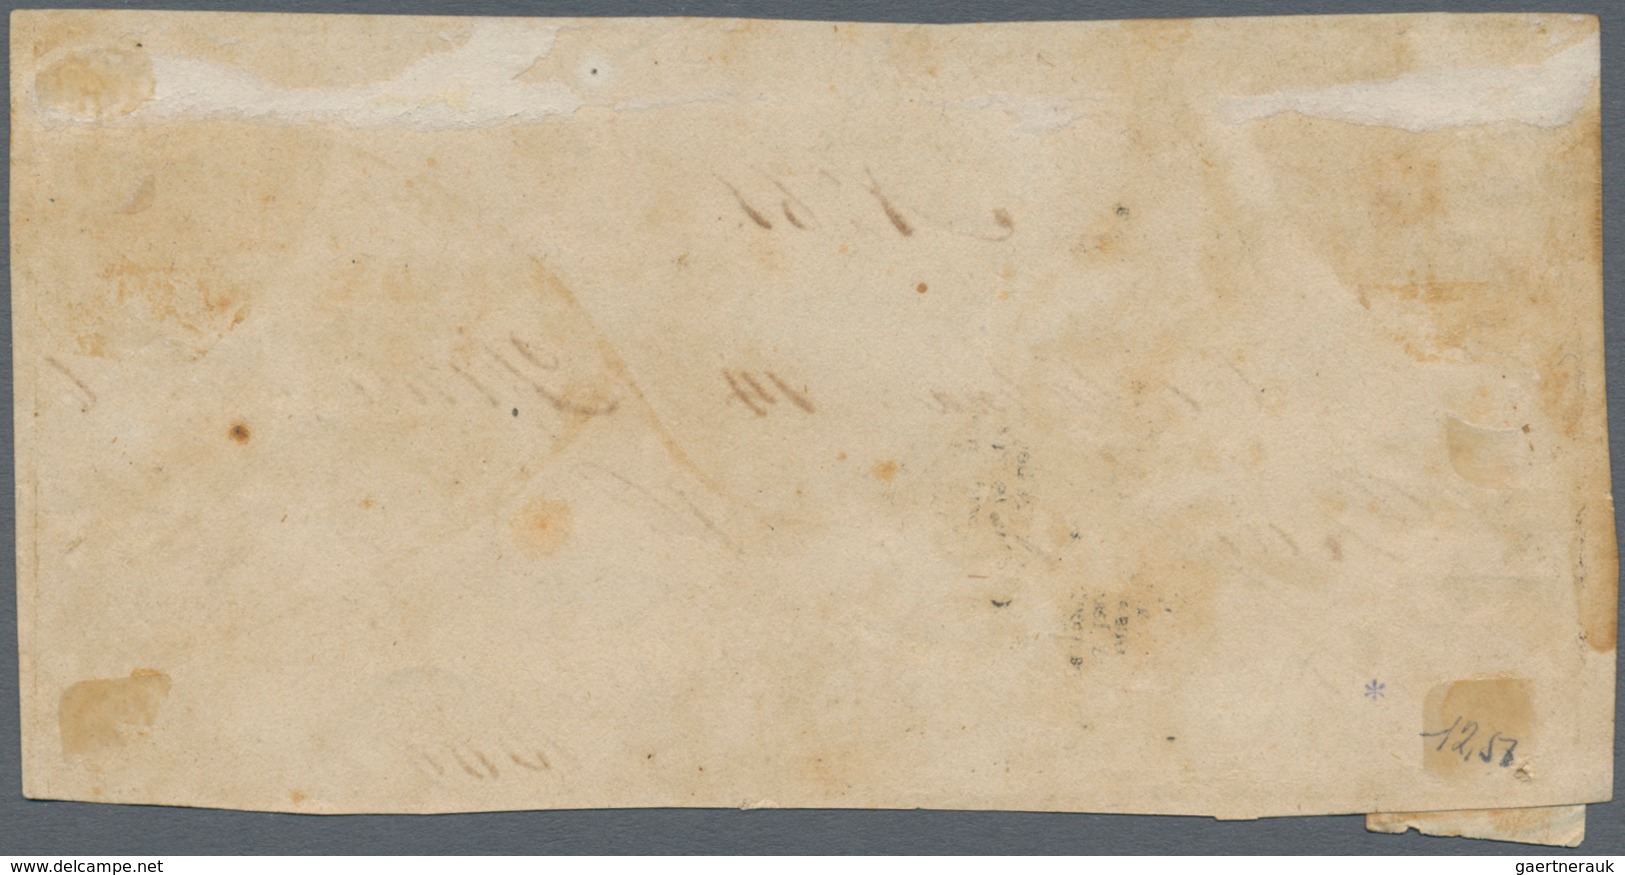 Kolumbien - Wertbriefsicherungsmarken: 1865, 25 C Cubierta (H&G CC 1) With Manuscript Sender Cartage - Kolumbien